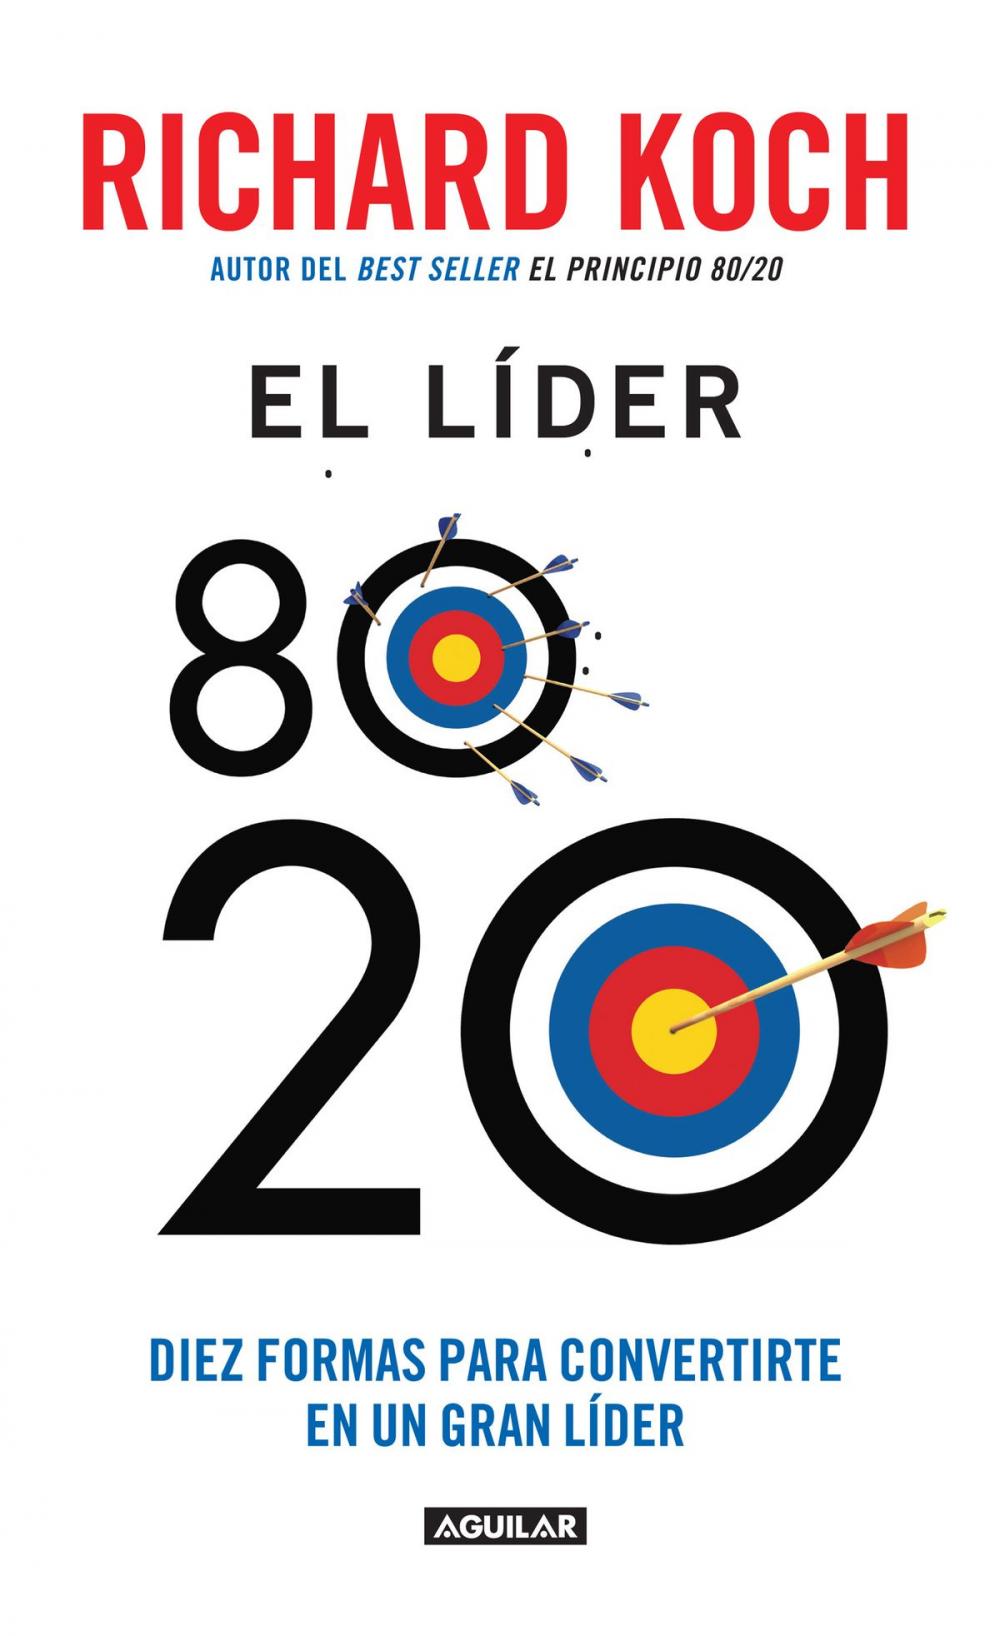 Big bigCover of El líder 80/20